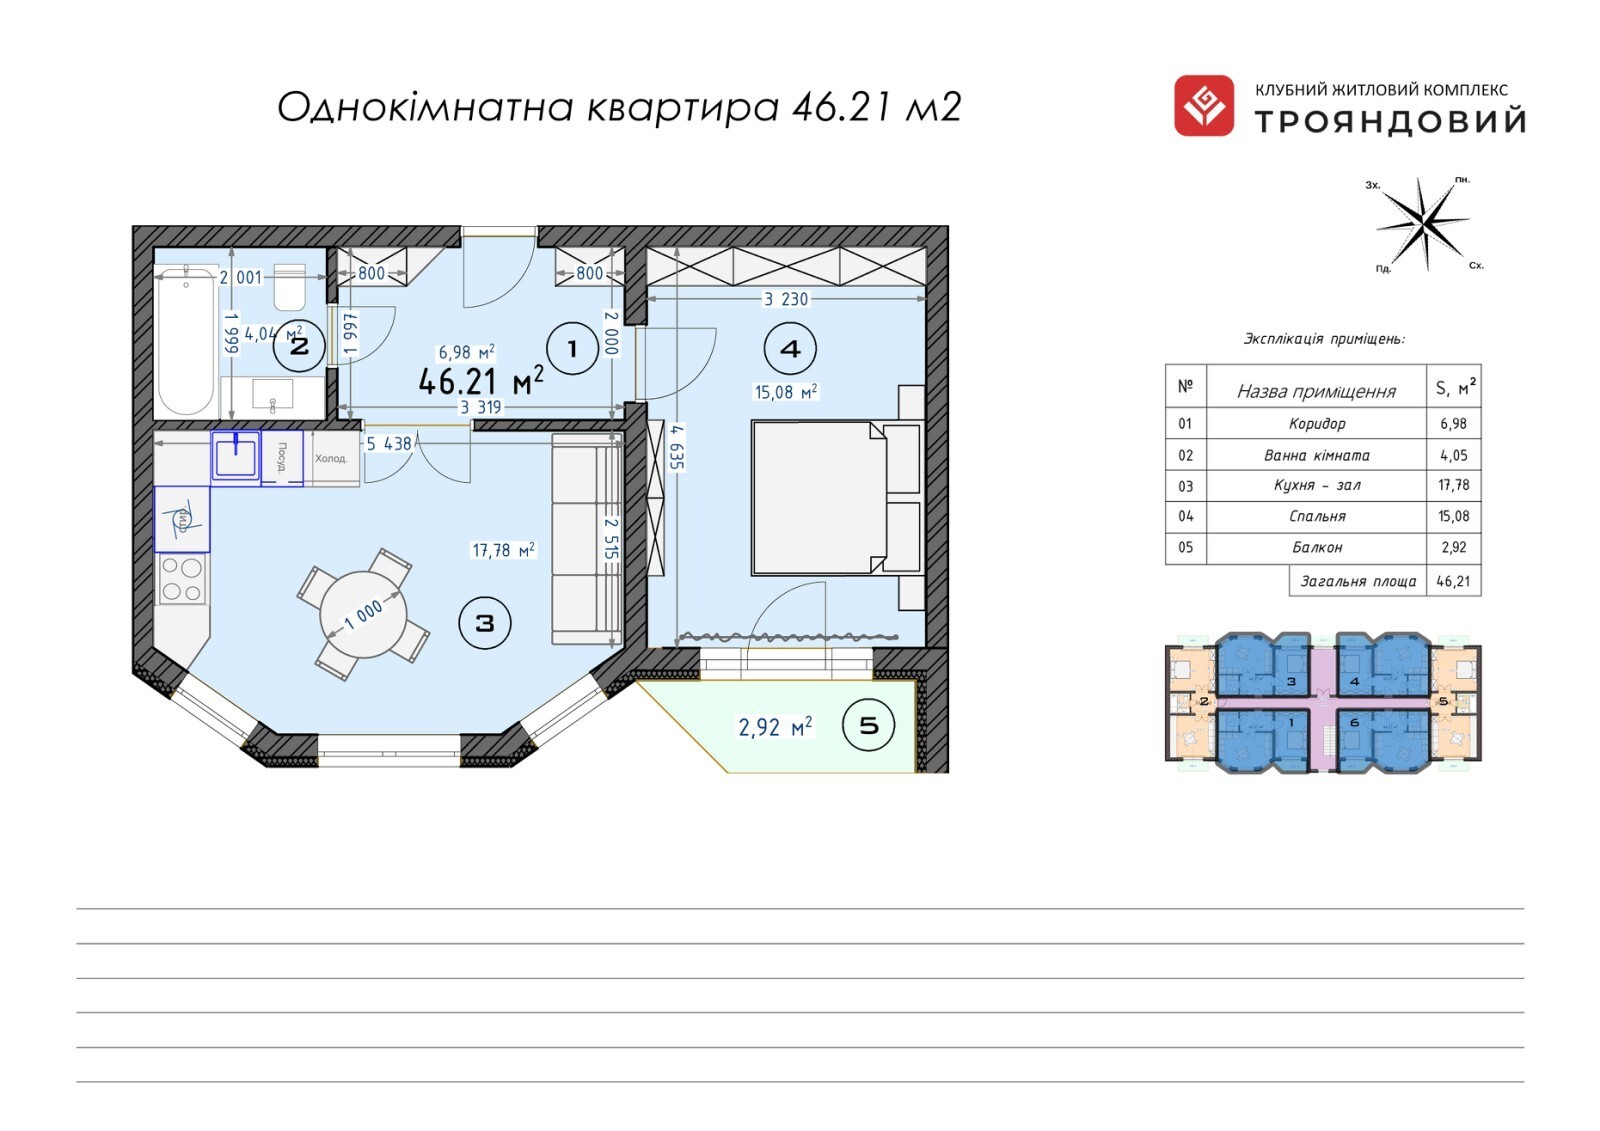 1-комнатная 46.21 м² в ЖК Трояндовый от 30 000 грн/м², г. Бровары